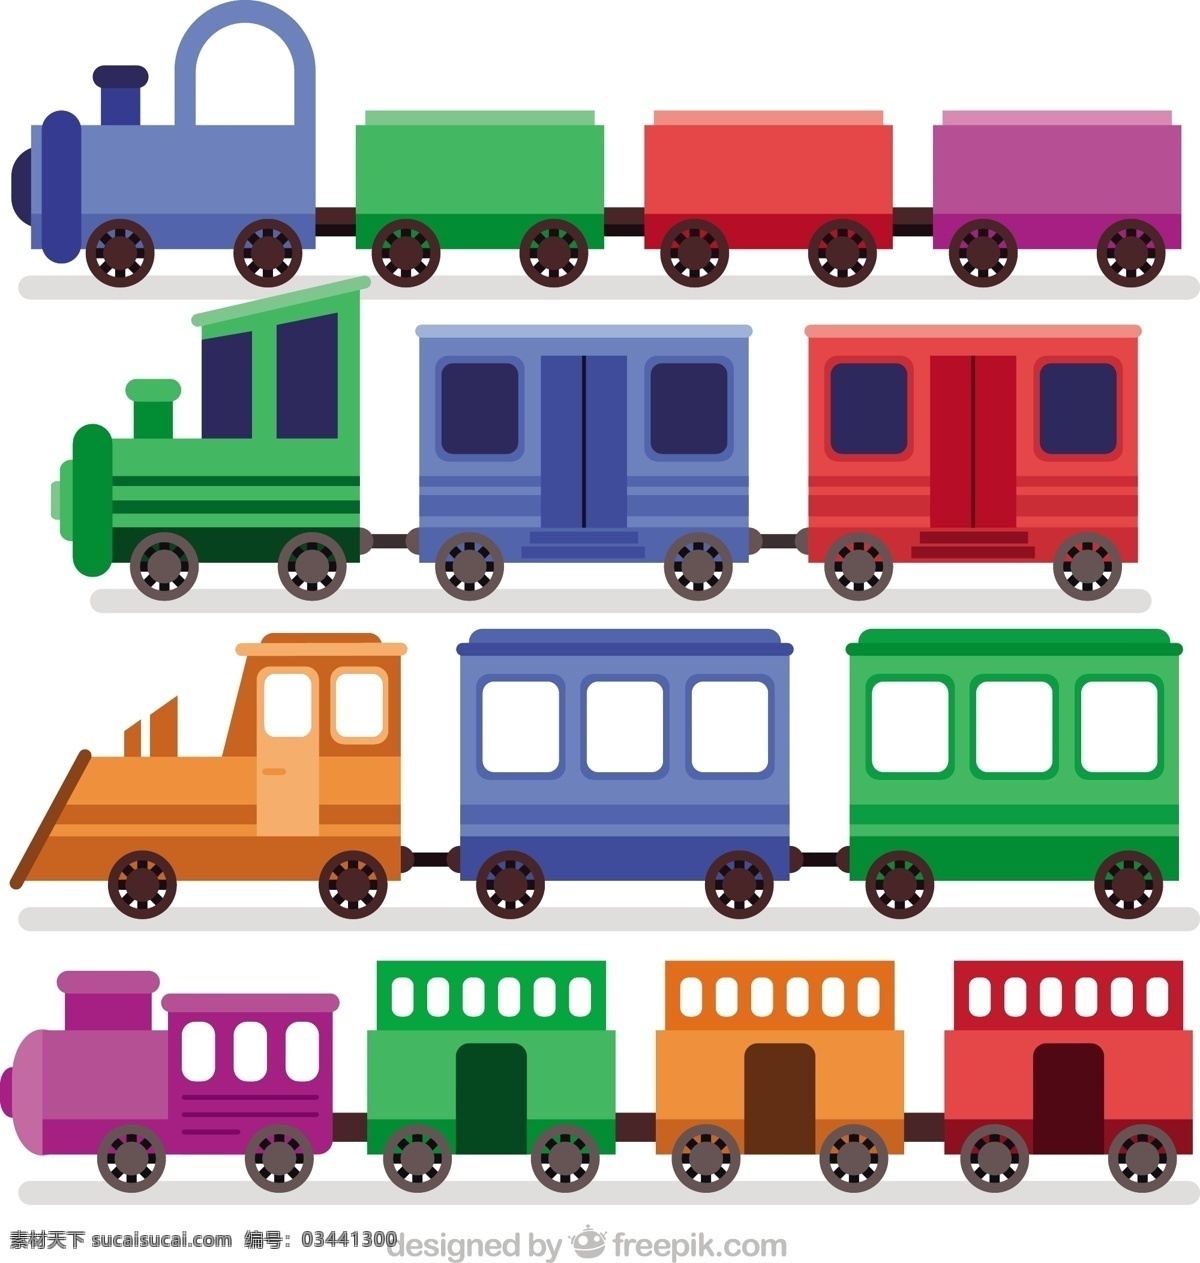 可爱 梦幻 般 彩色 玩具 火车 矢量 可爱的 梦幻般 彩色玩具 矢量素材